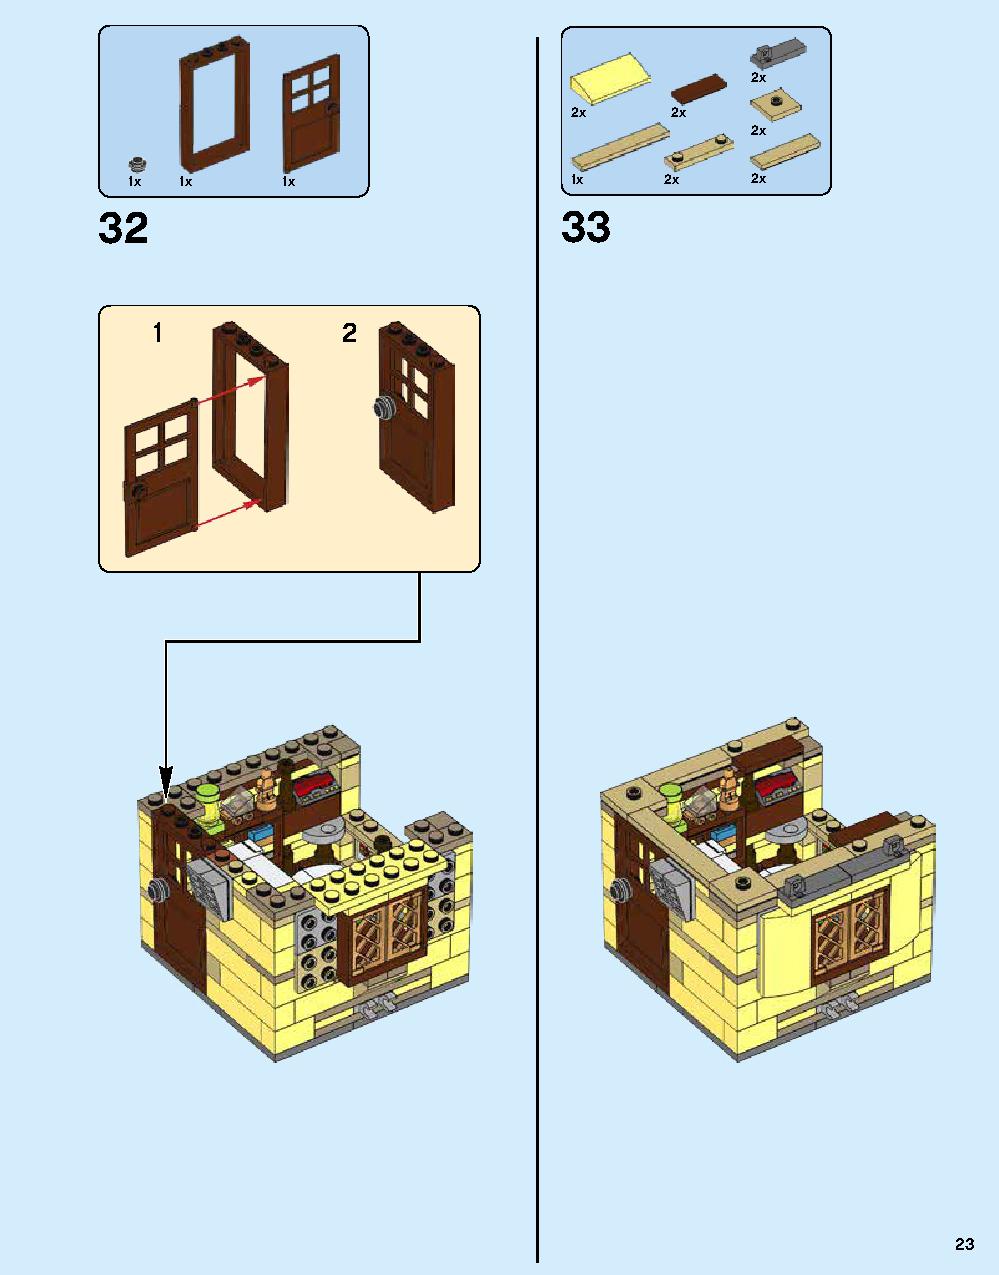 ニンジャゴー シティ 70620 レゴの商品情報 レゴの説明書・組立方法 23 page